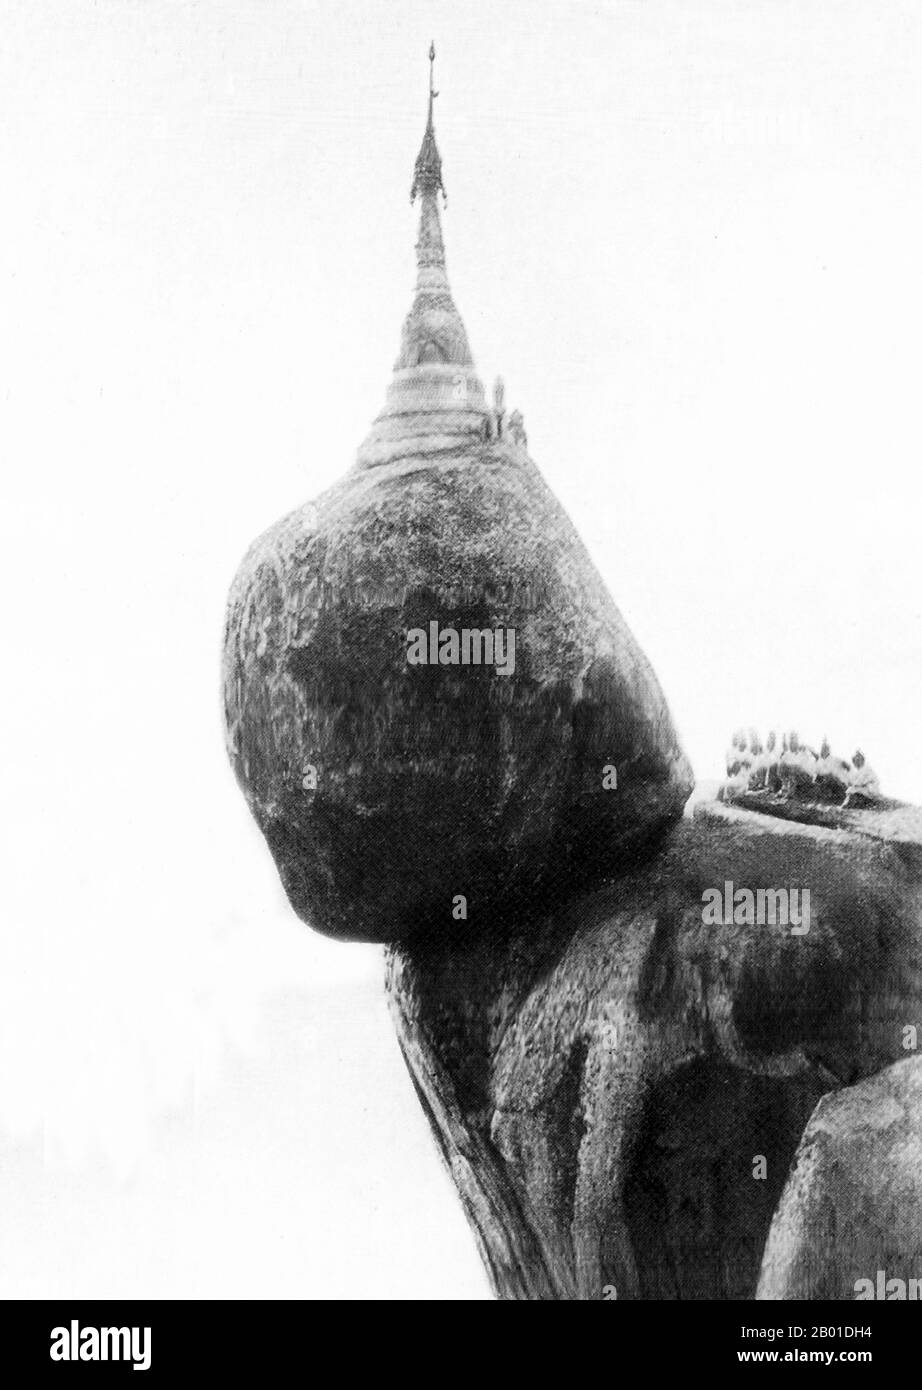 Birmania: Kyaiktiyo Pagoda, 1892-1896. La Pagoda di Kyaiktiyo (conosciuta anche come Golden Rock) è un noto luogo di pellegrinaggio buddista nello Stato di Mon, nella Birmania orientale. Si tratta di una piccola pagoda (7,3 metri (24 piedi)) costruita sulla cima di un masso di granito coperto con foglie d'oro incollato da devoti. Secondo la leggenda, la roccia dorata stessa è arroccata precariamente su un filo dei capelli del Buddha. La roccia sembra sfidare la gravità, poiché sembra essere perennemente sul punto di rotolare giù la collina. Foto Stock